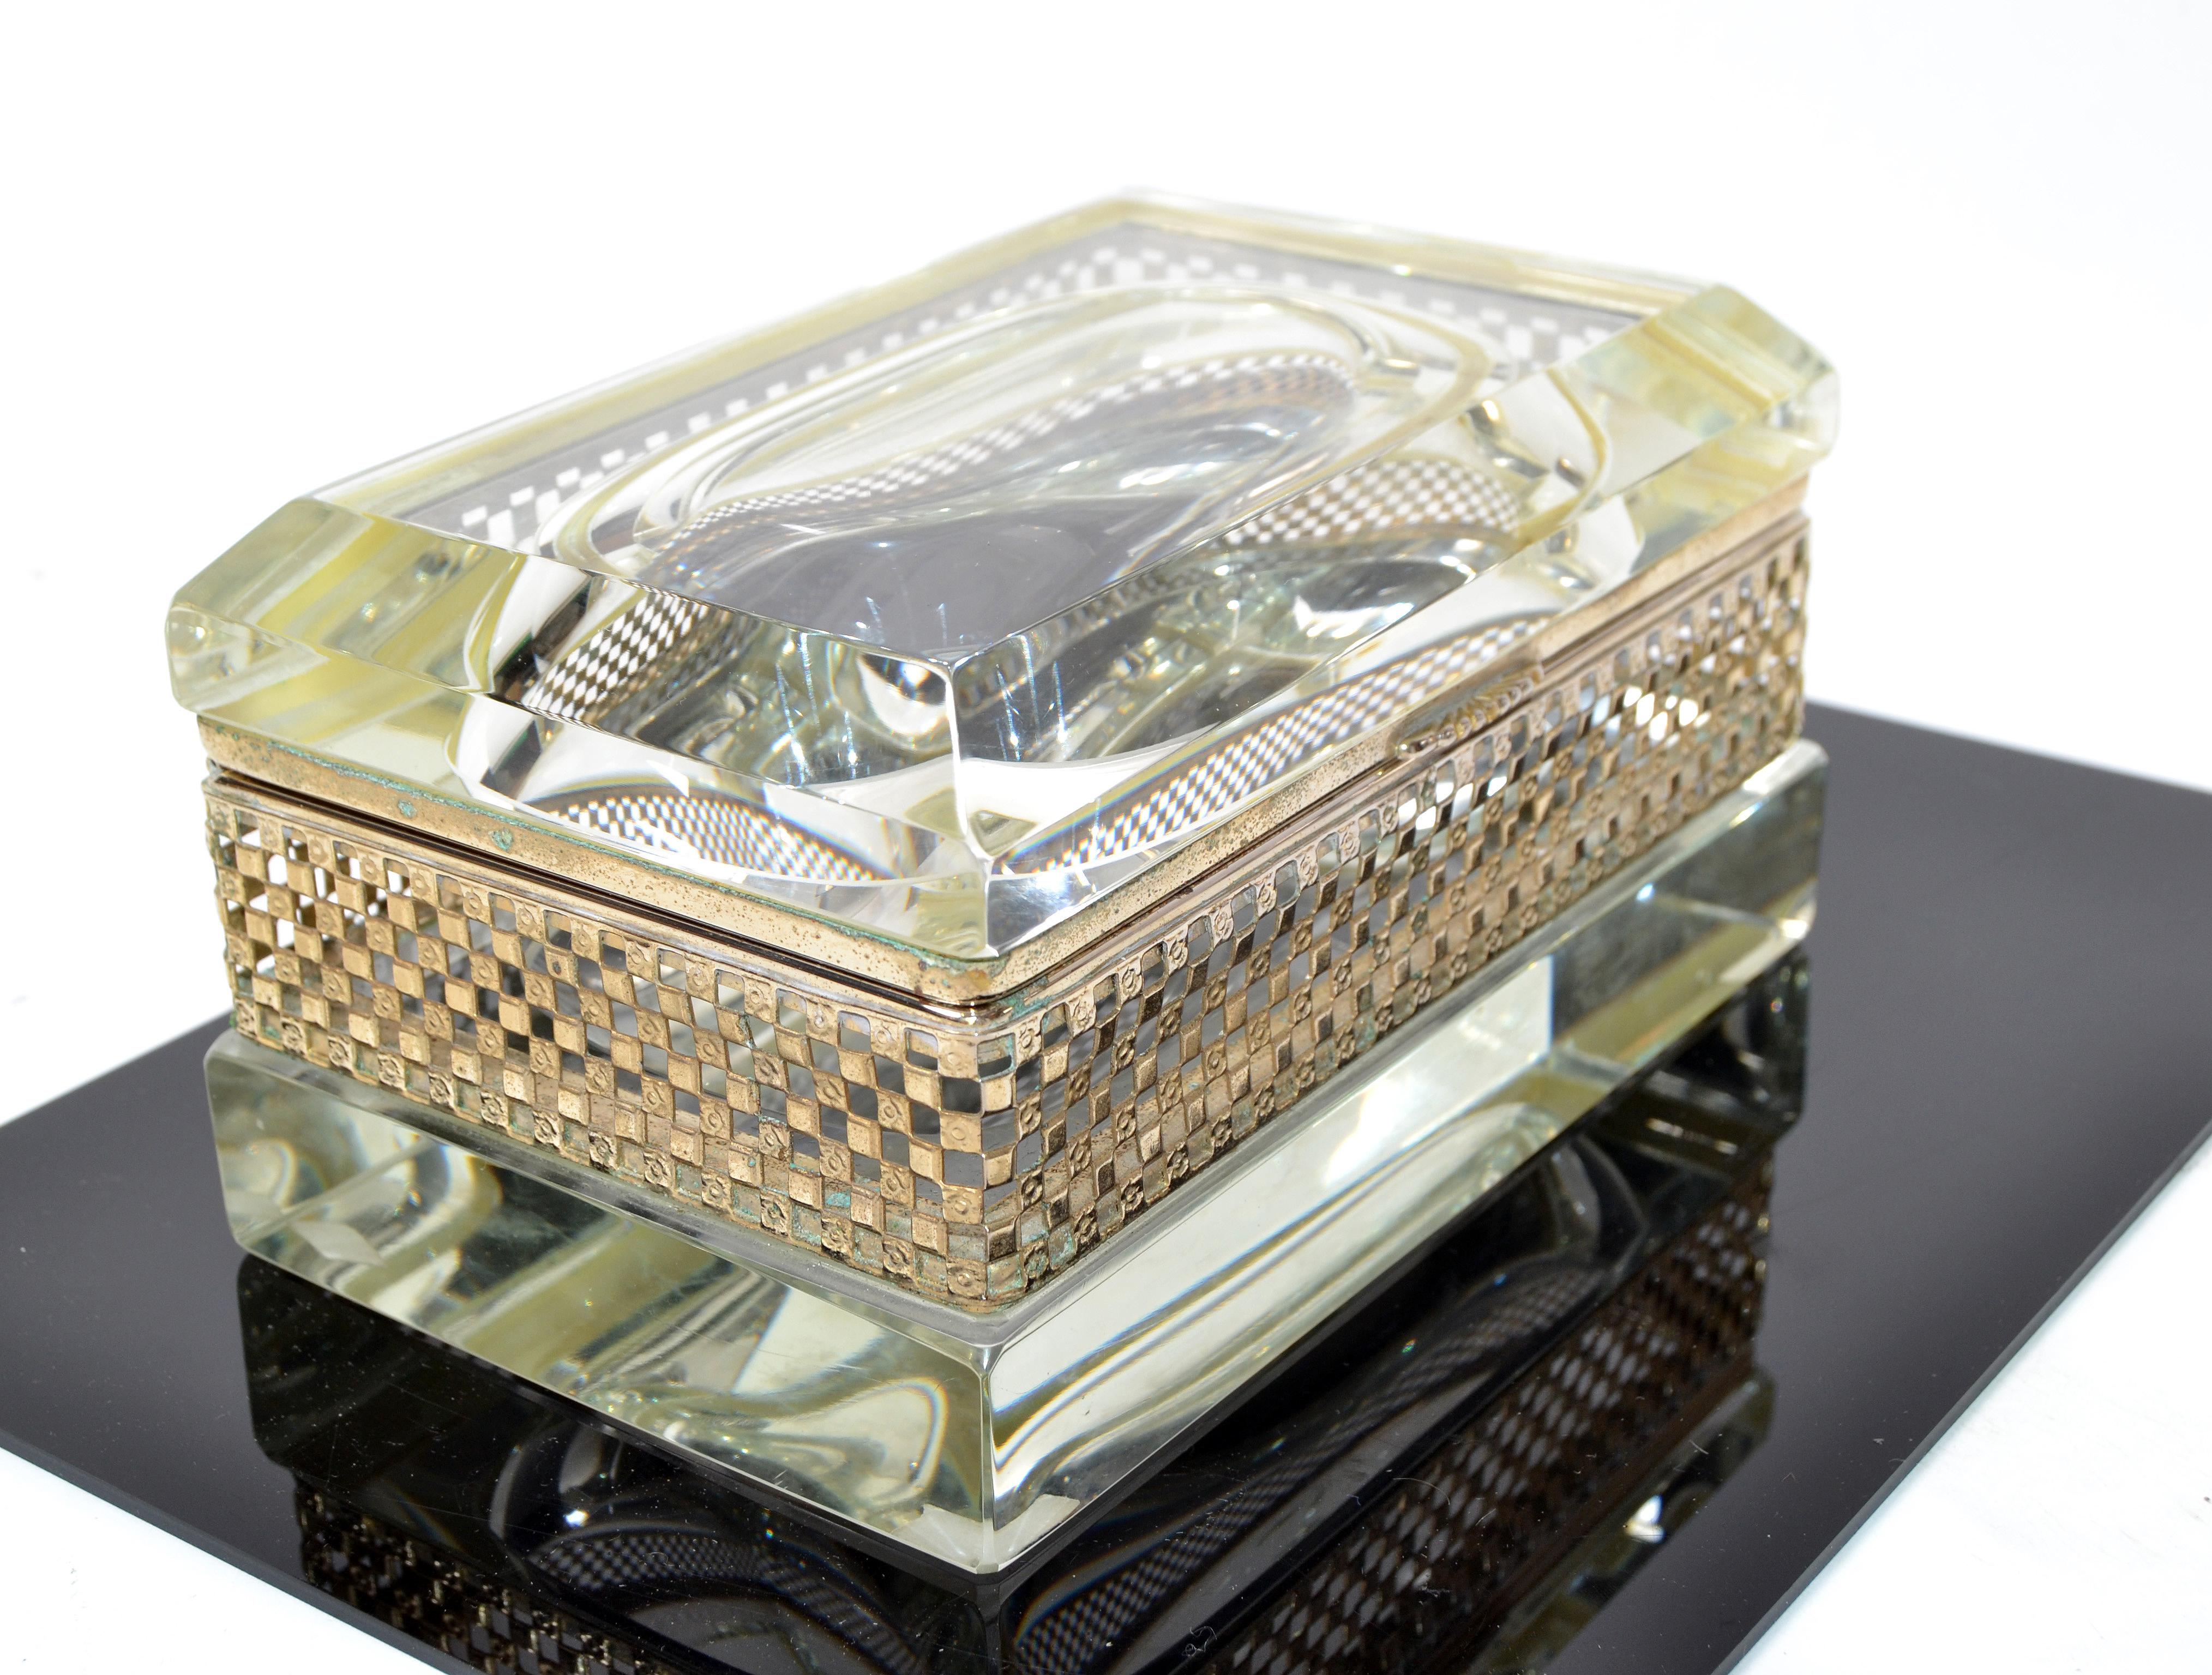 Art Deco Italian Murano Glass & 24k Gold Plate Jewelry Case Mandruzzato Style  For Sale 3